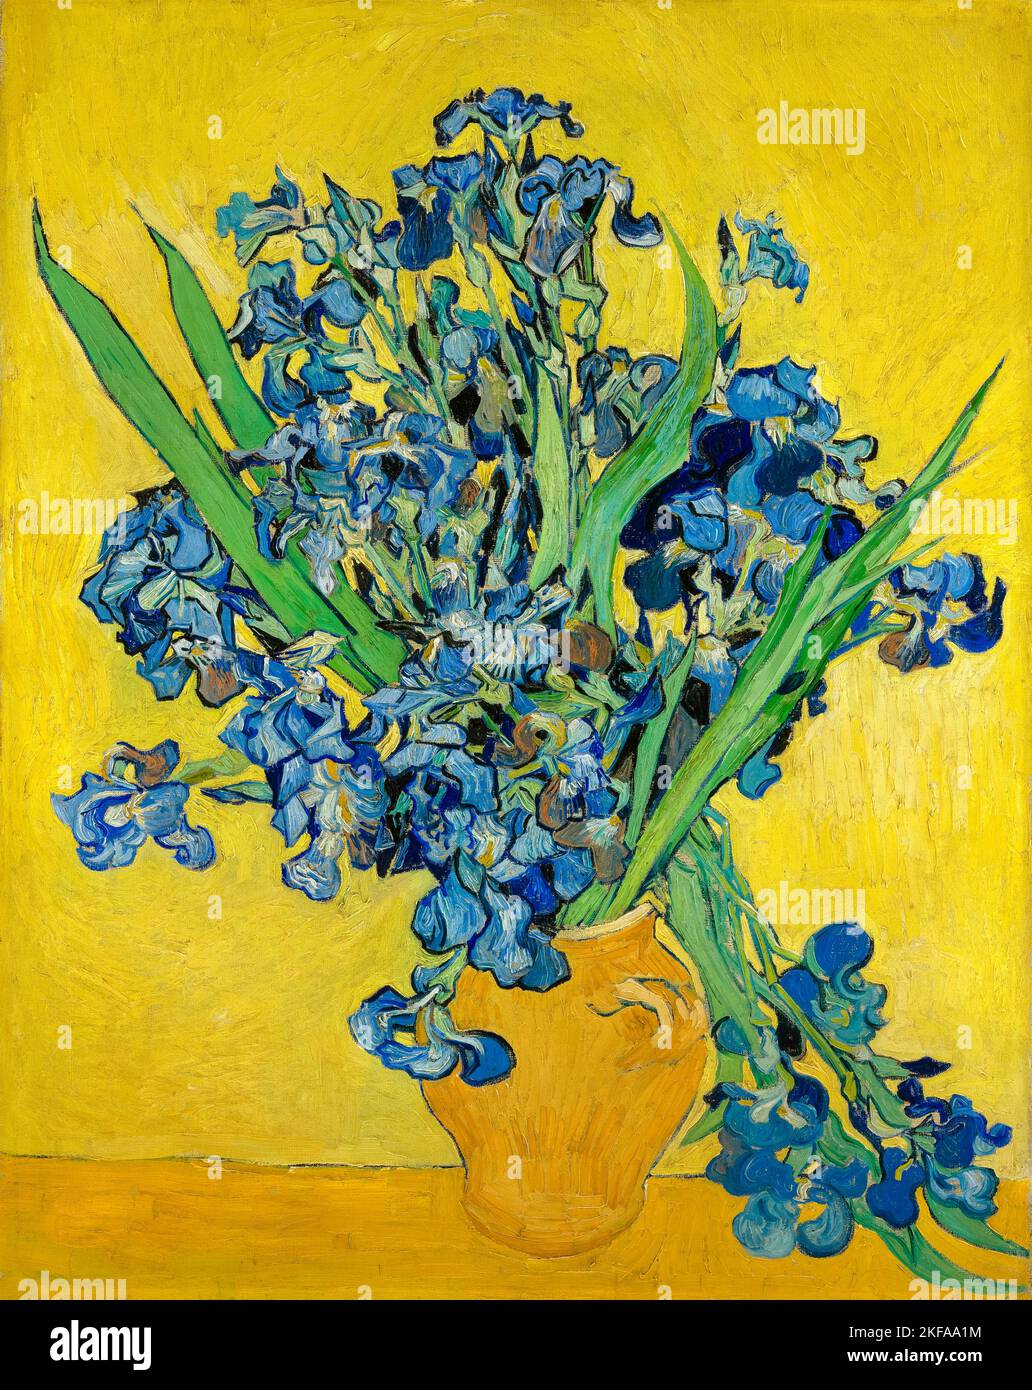 Vincent van Gogh, Ilees, peinture encore à l'huile sur toile, 1890 Banque D'Images